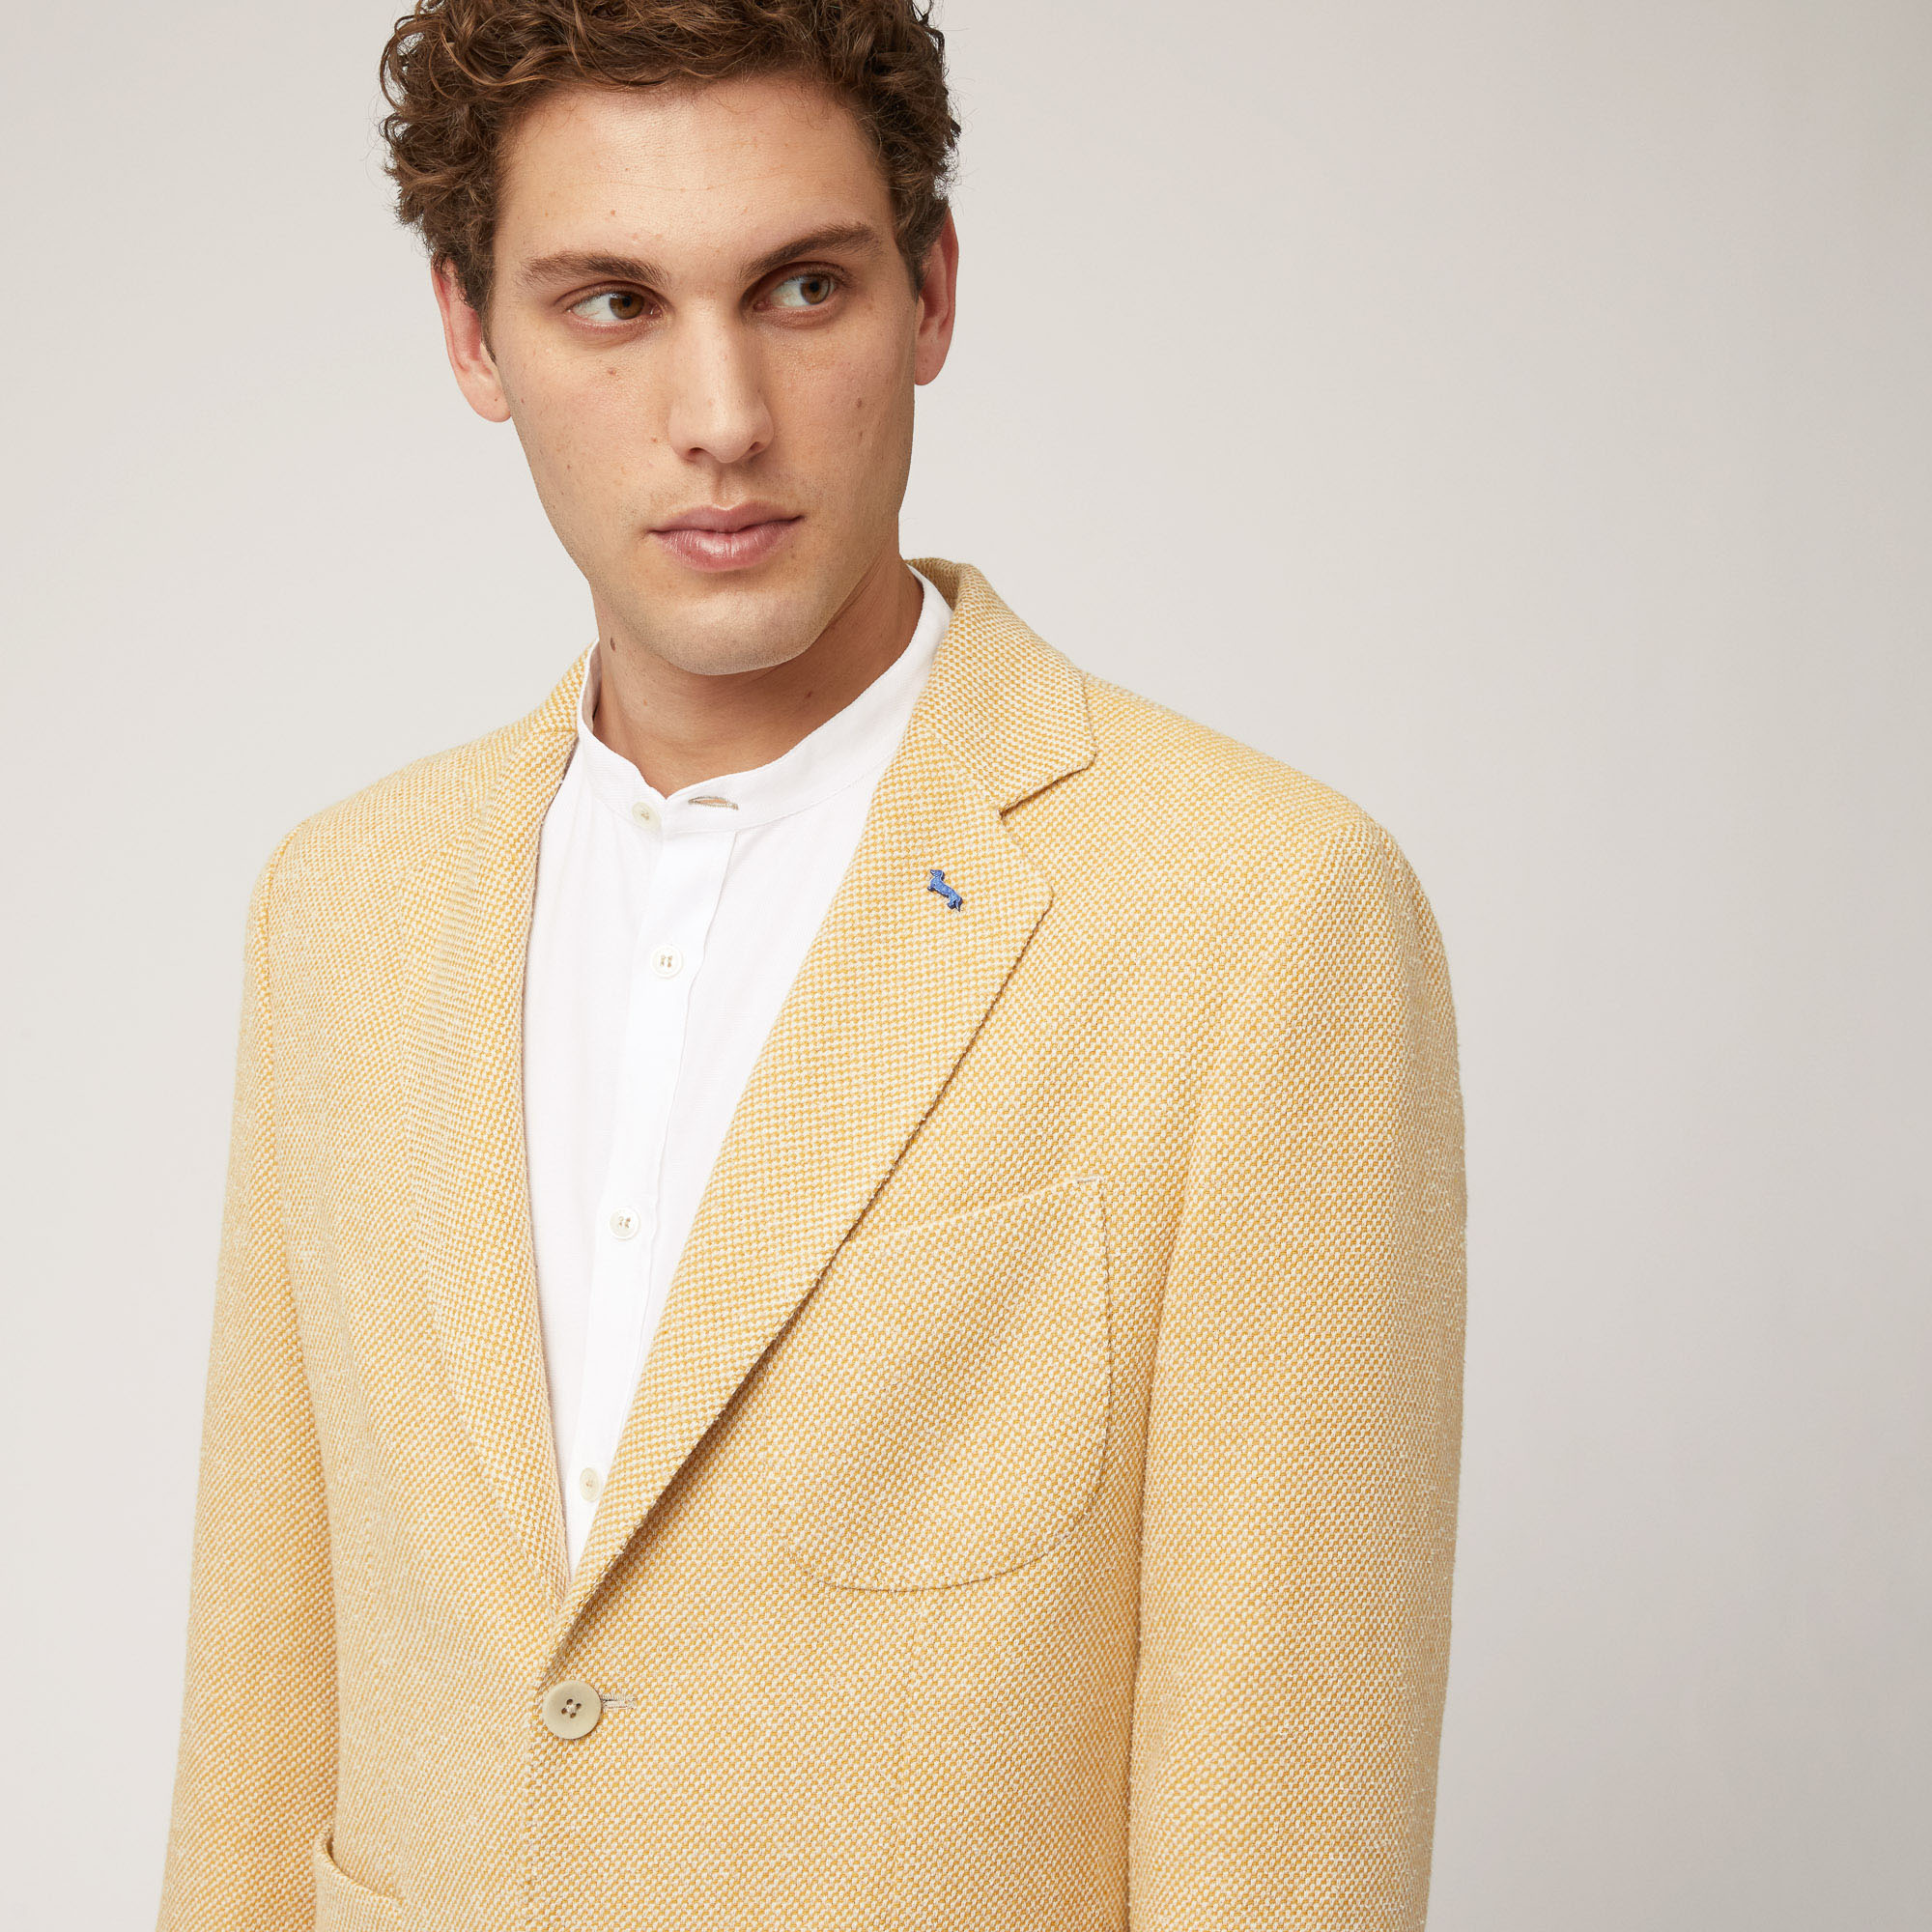 Jacke aus Baumwolle und Leinen mit Taschen und Brusttasche, Gold, large image number 2